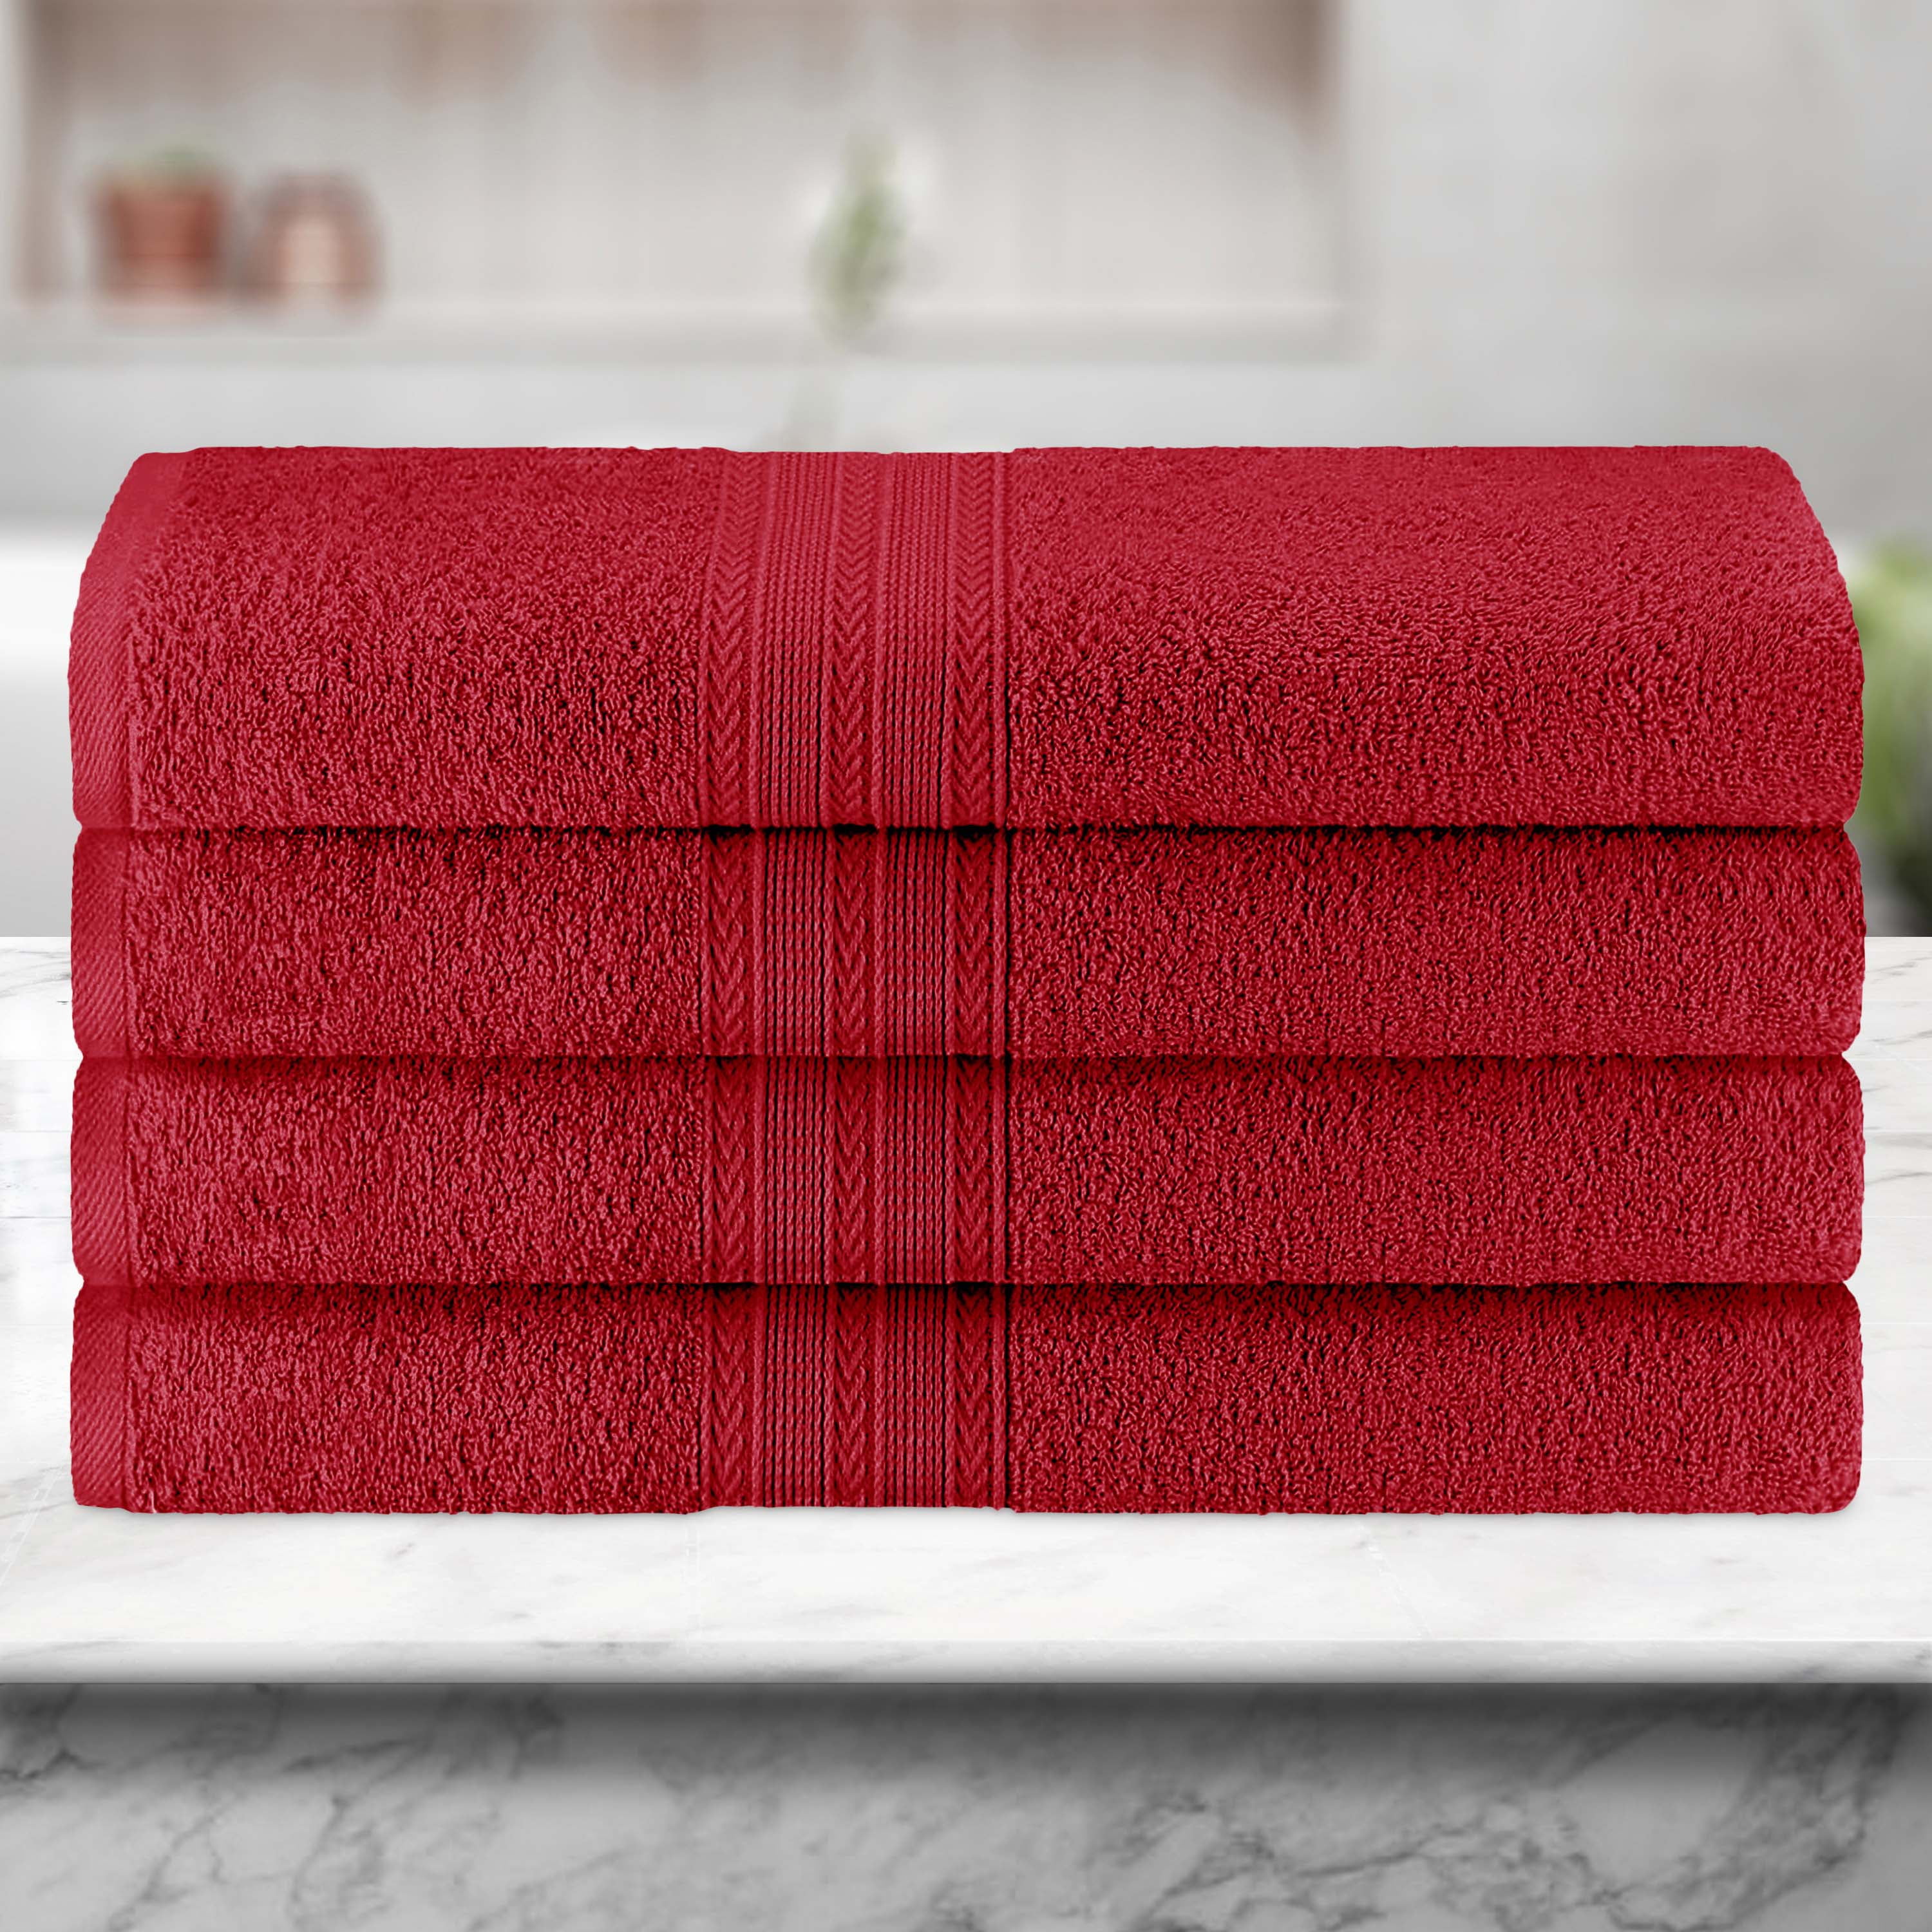 Cassadecor Signature Solid Bath Towels